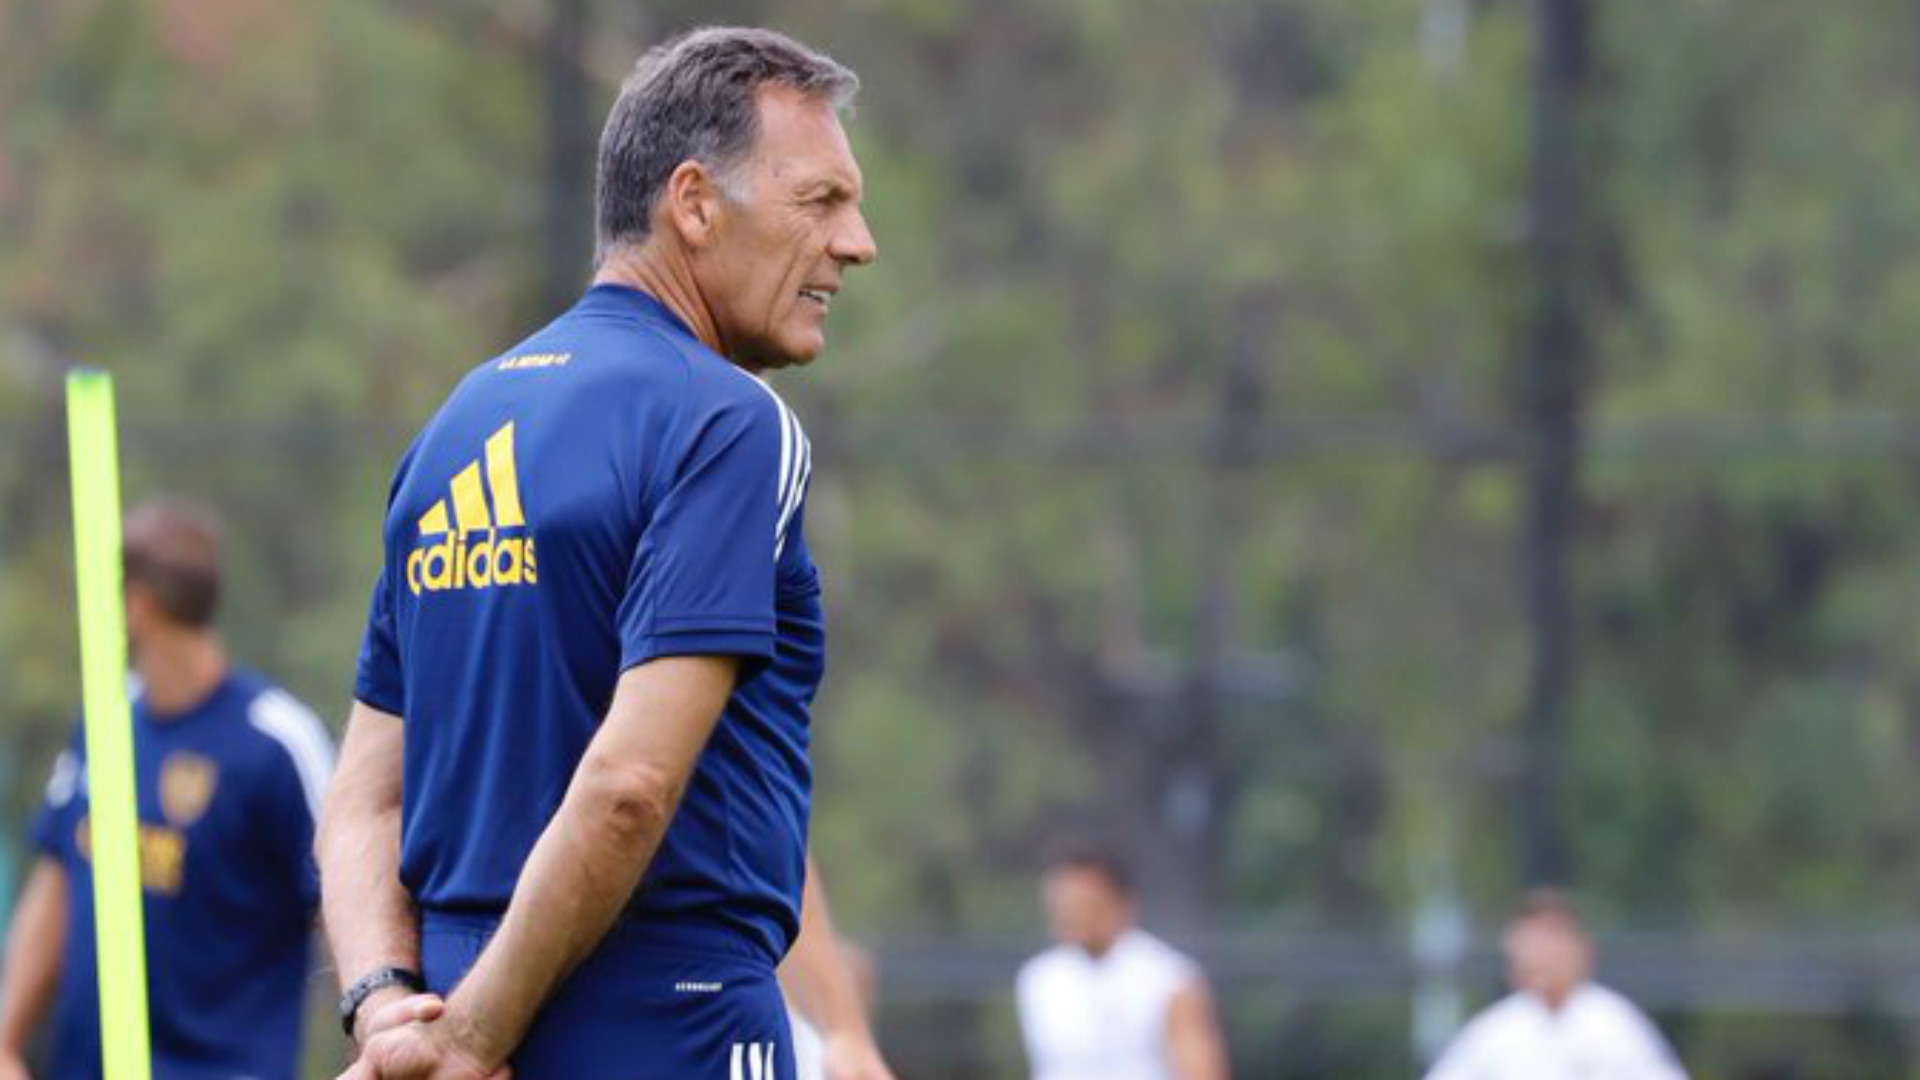 El entrenador de Boca. Miguel Ángel Russo, pondrá el mismo equipo que viene de ganarle a Inter, en Brasil, 1-0.l